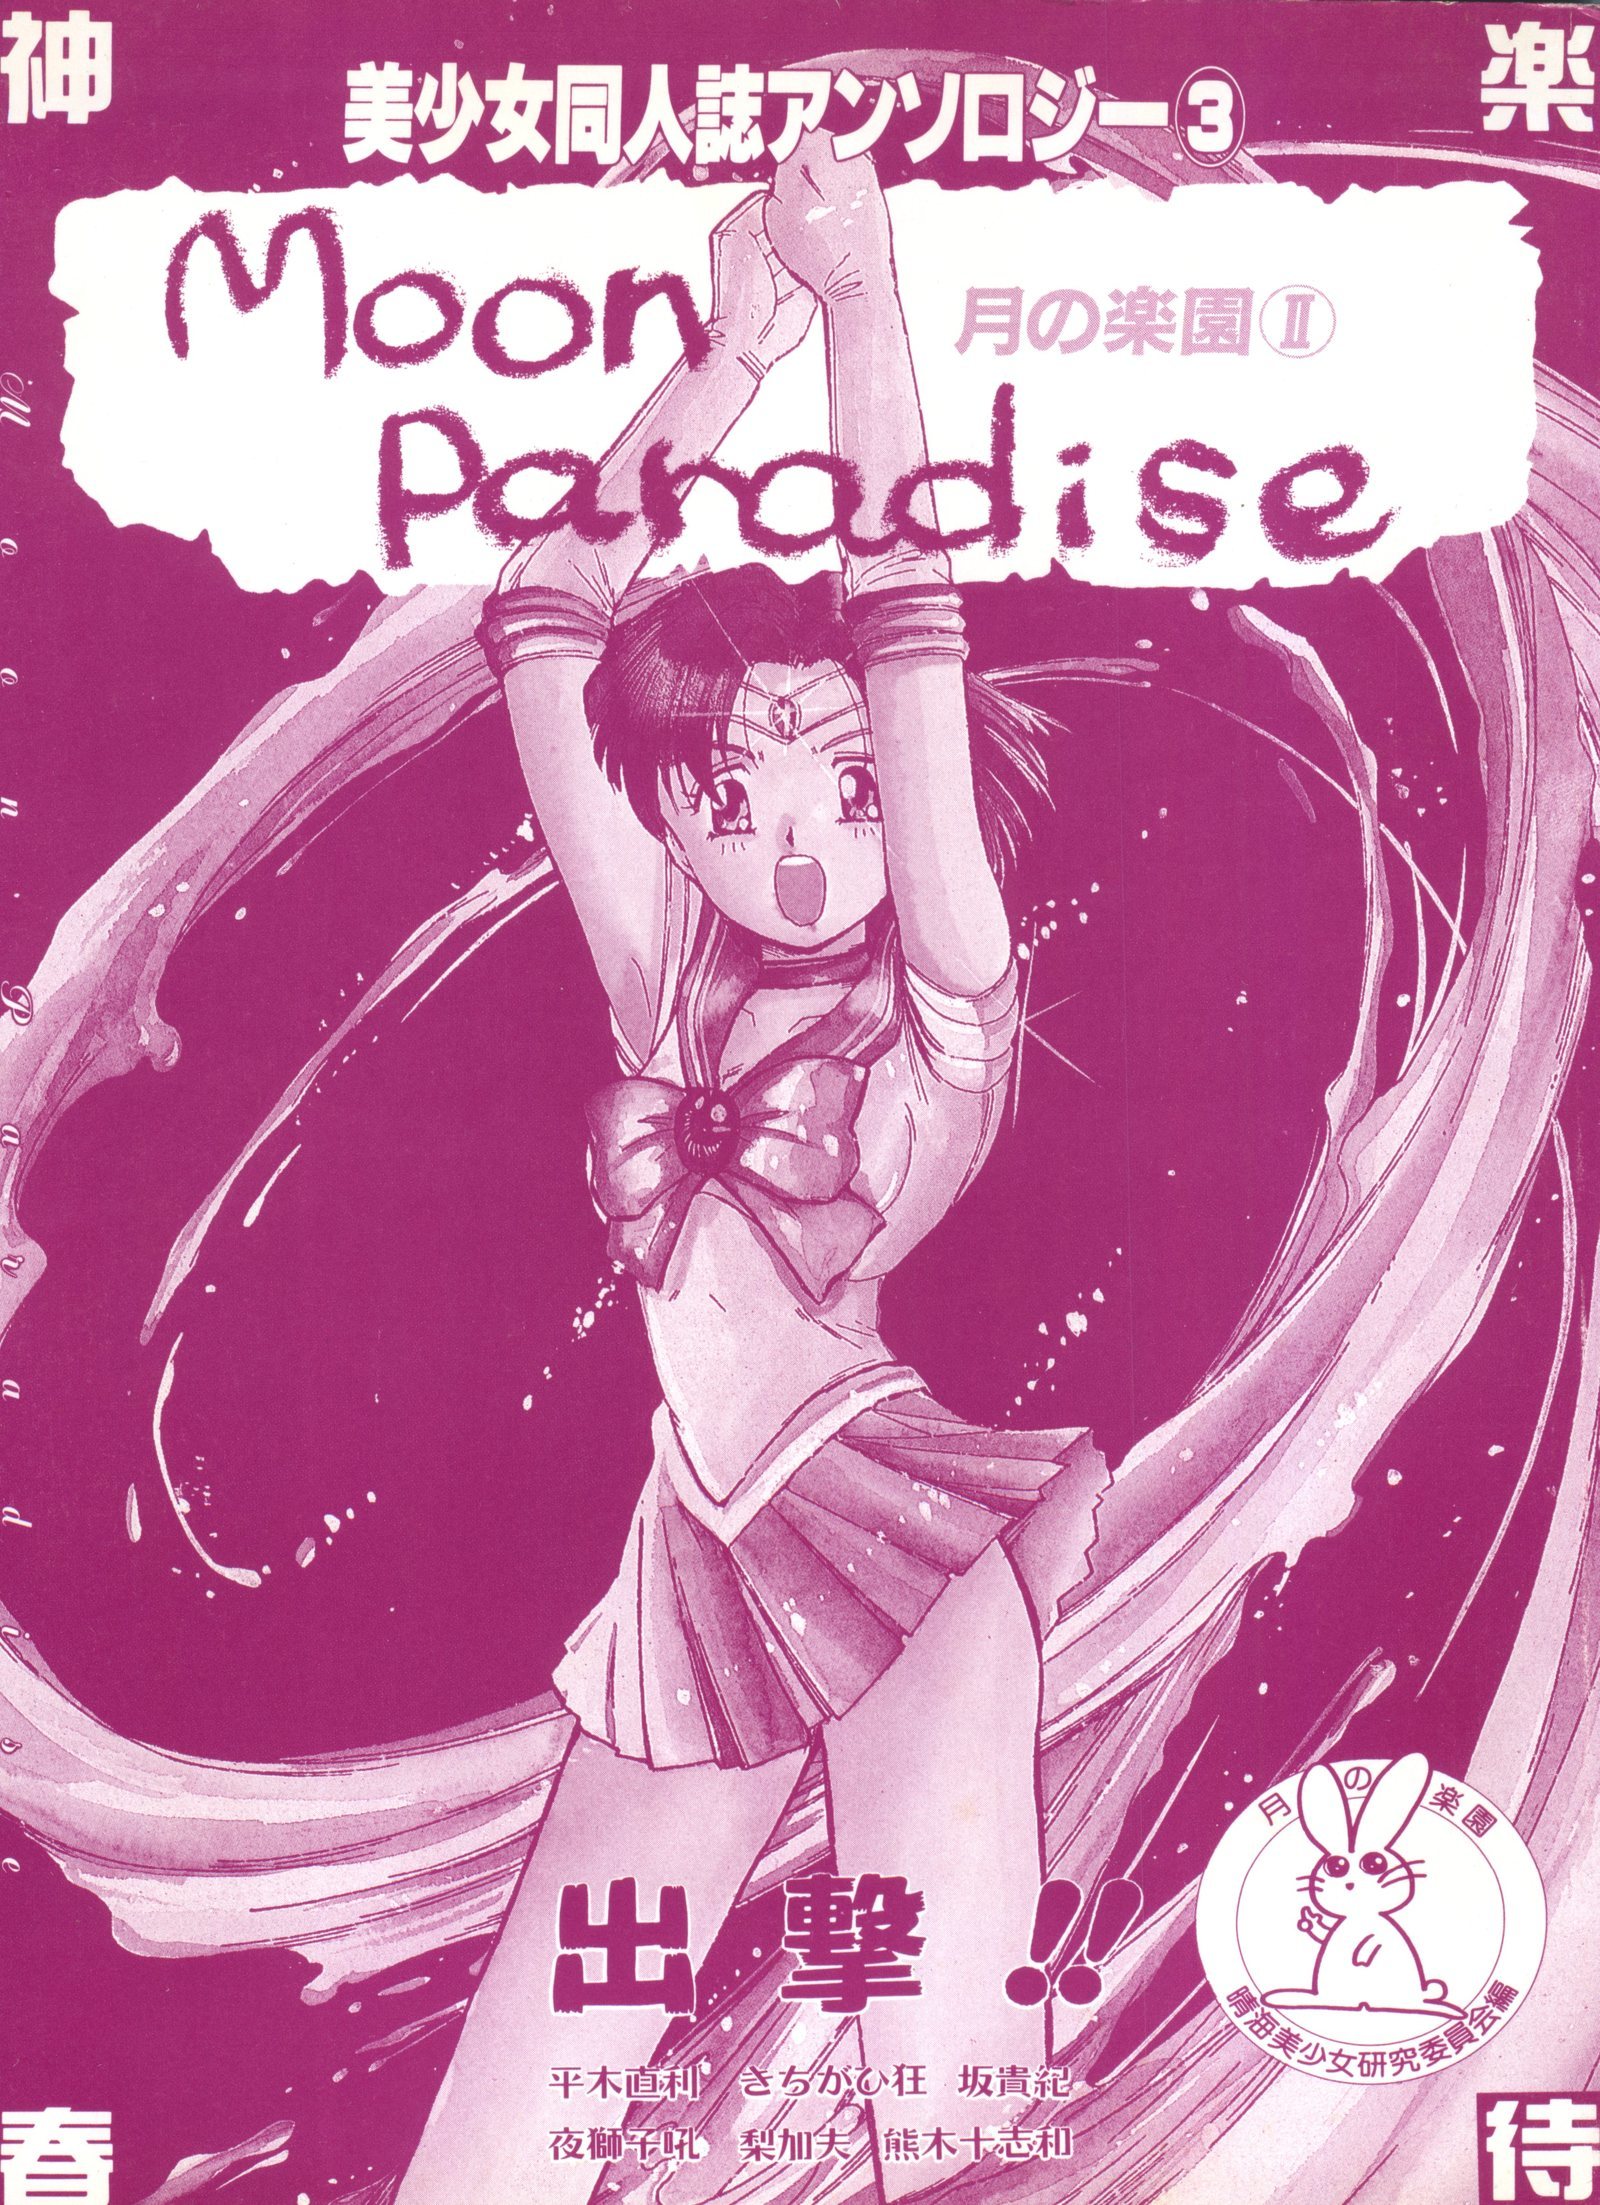 美少女同人誌アンソロジー3-ムーンパラダイス2月の楽園